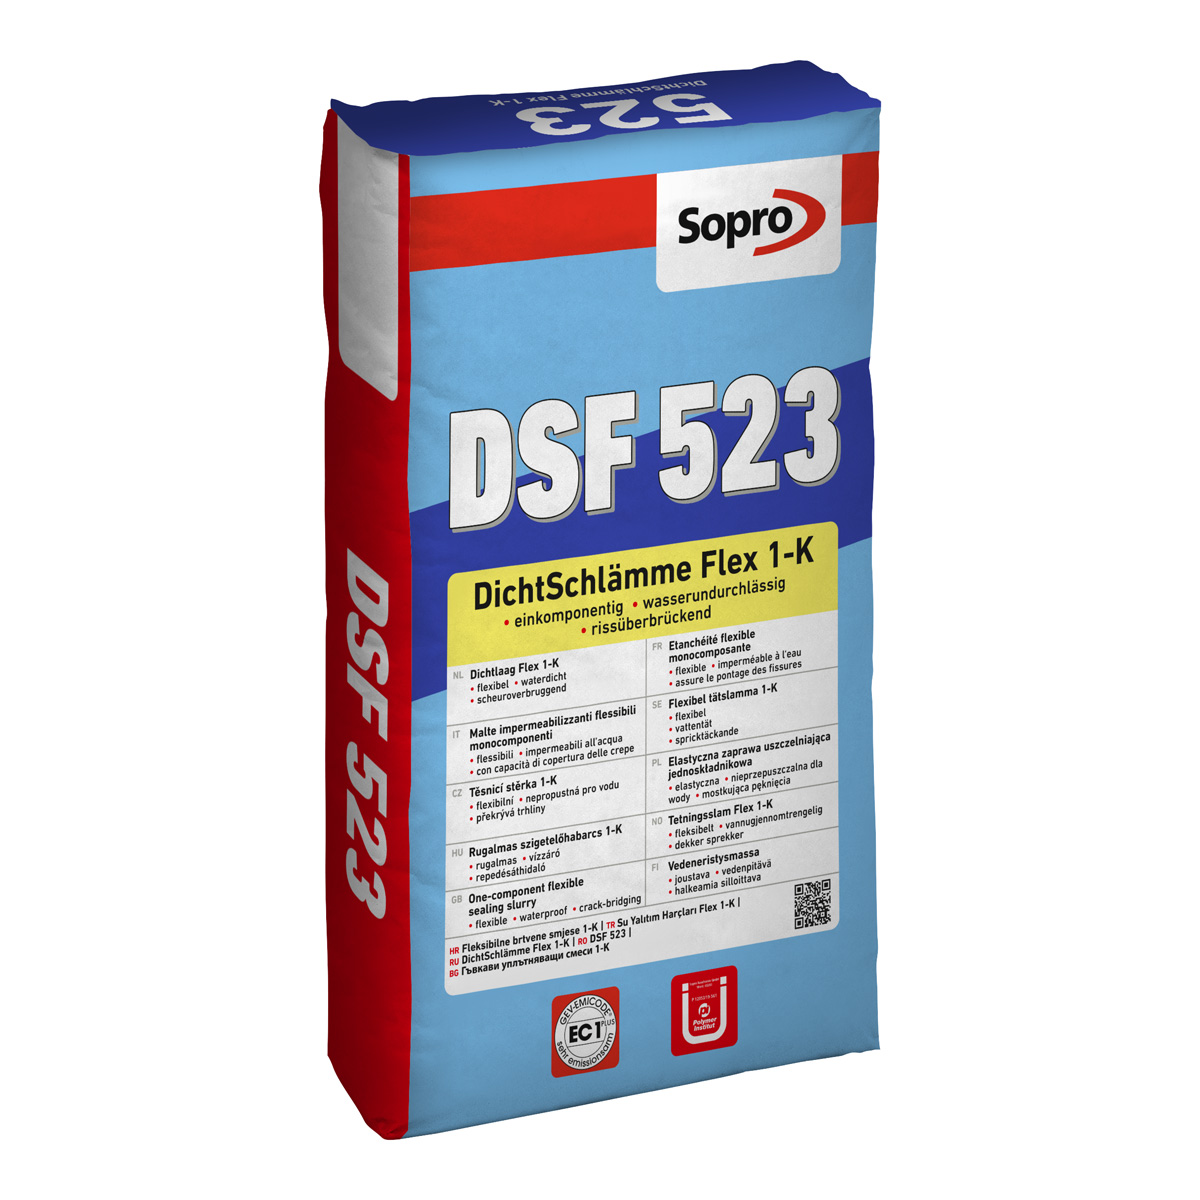 Sopro Dichtschlämme DSF 523 Flex 1-K